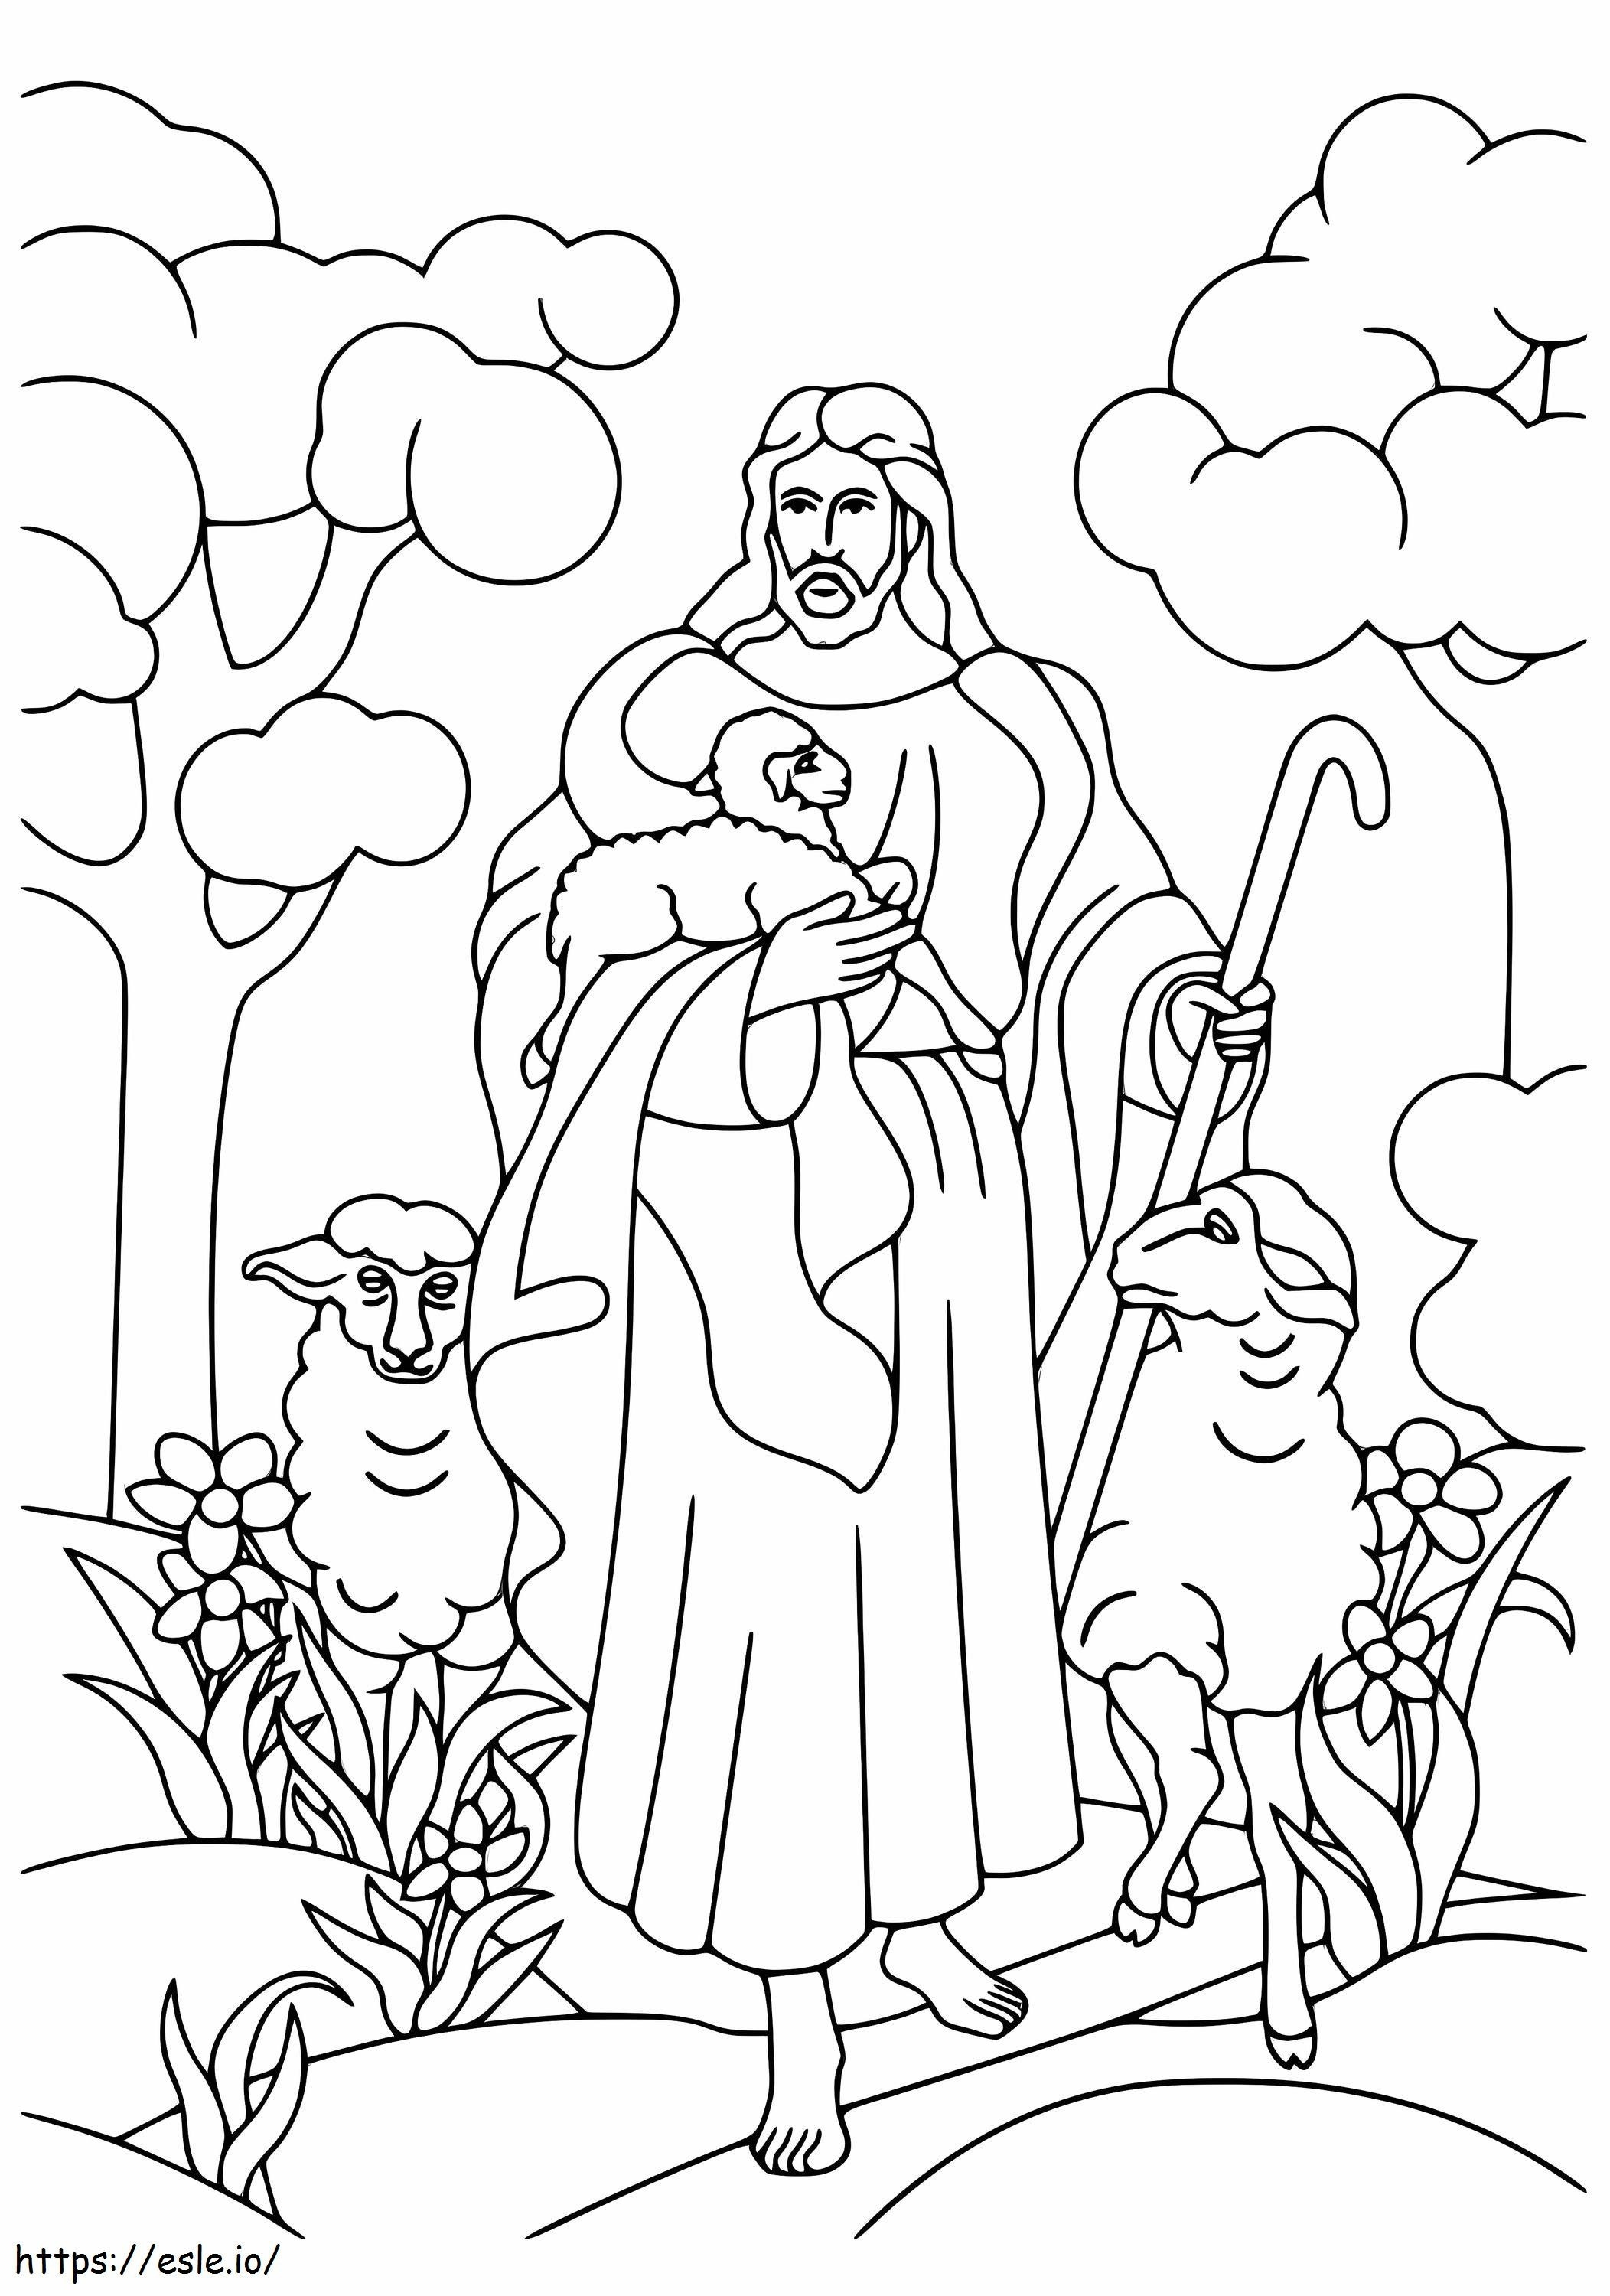 Jezus met drie schapen kleurplaat kleurplaat